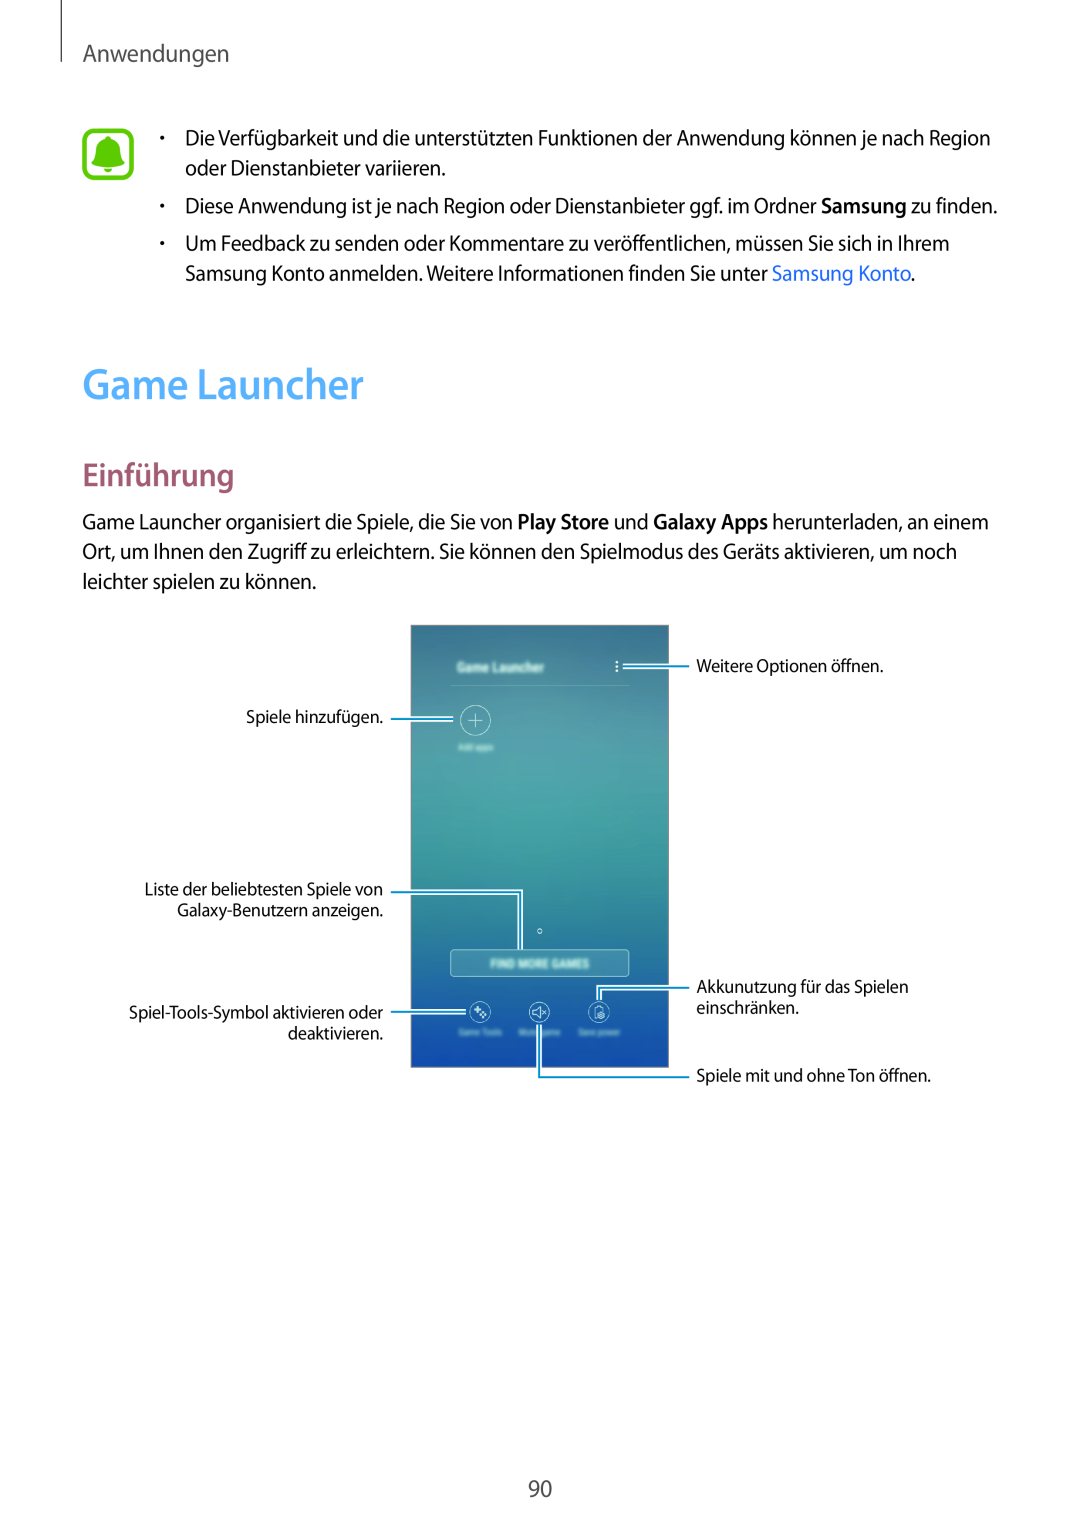 Samsung SM-J530FZSDDBT Game Launcher, Einführung, Anwendungen, Weitere Optionen öffnen Spiele hinzufügen, einschränken 